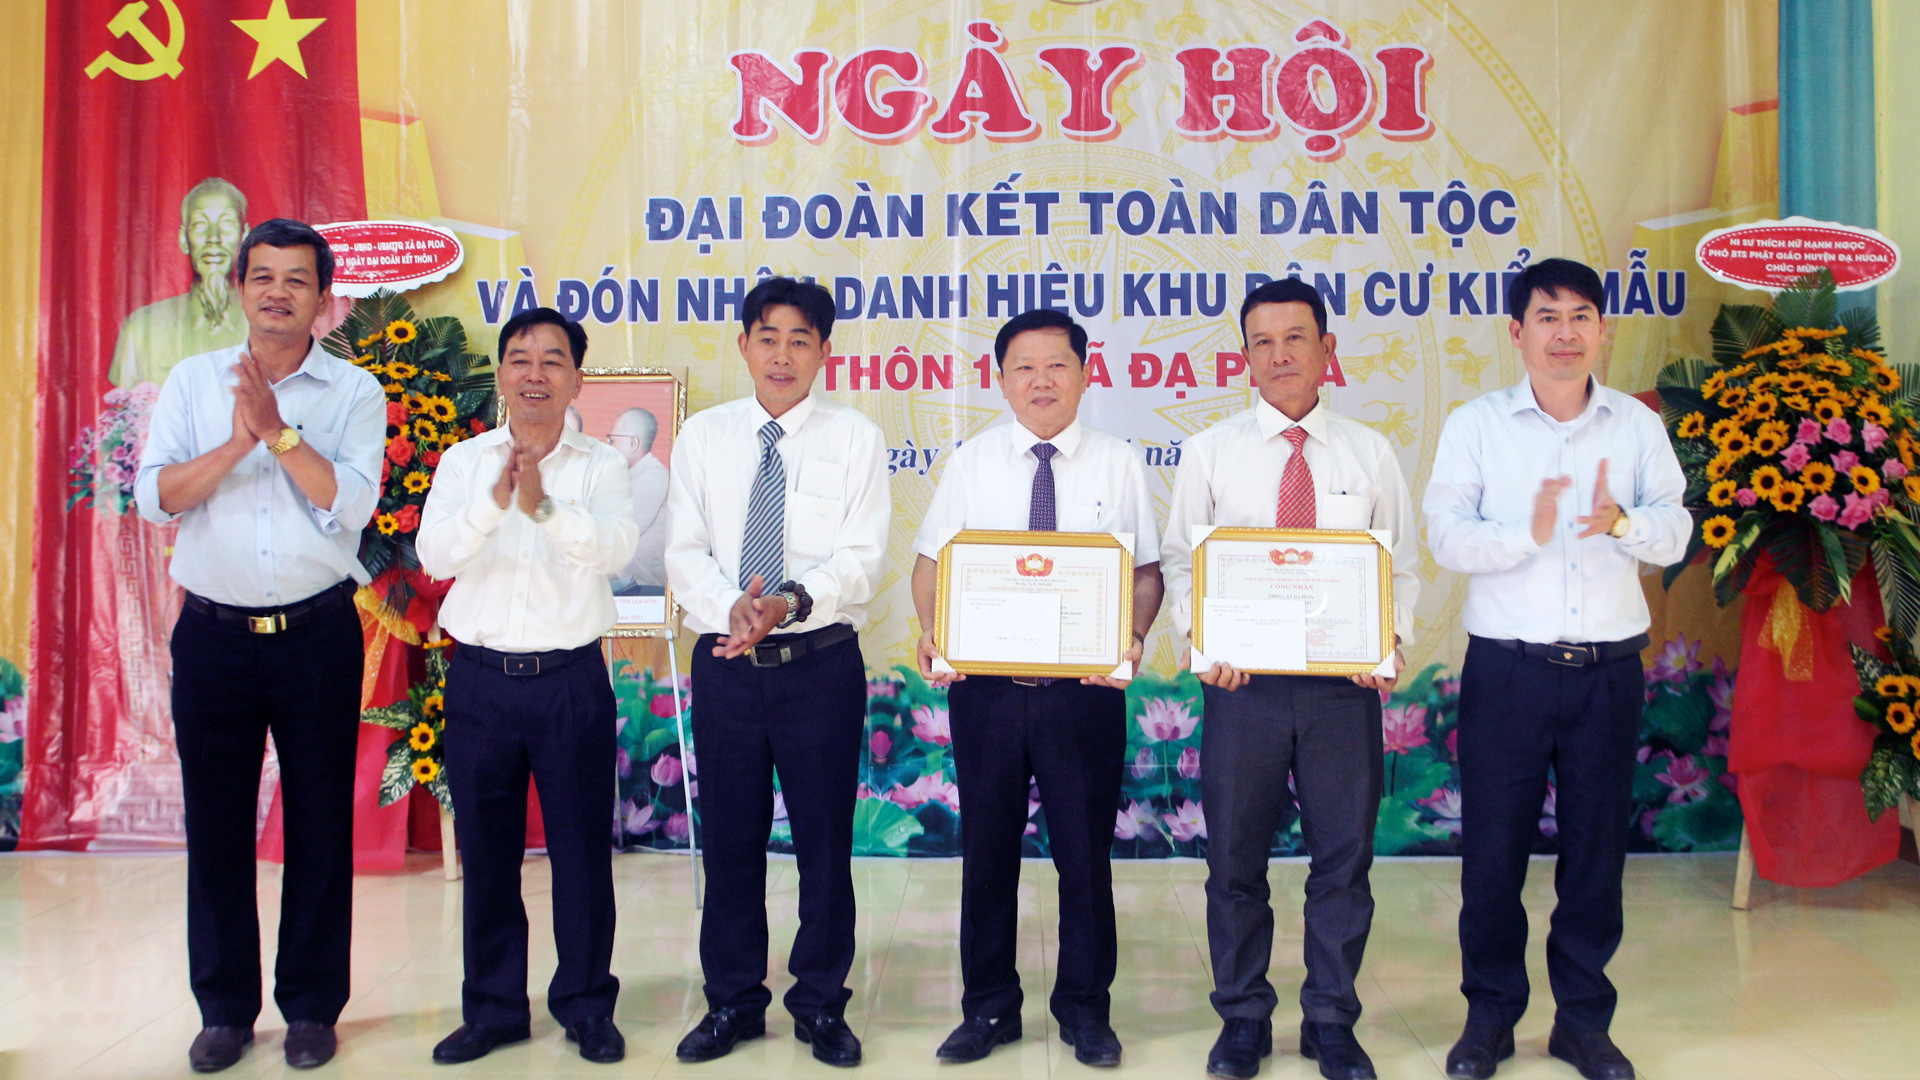 Niềm vui của cán bộ, đảng viên và Nhân dân huyện Đạ Huoai trong Ngày hội Đại đoàn kết toàn dân tộc